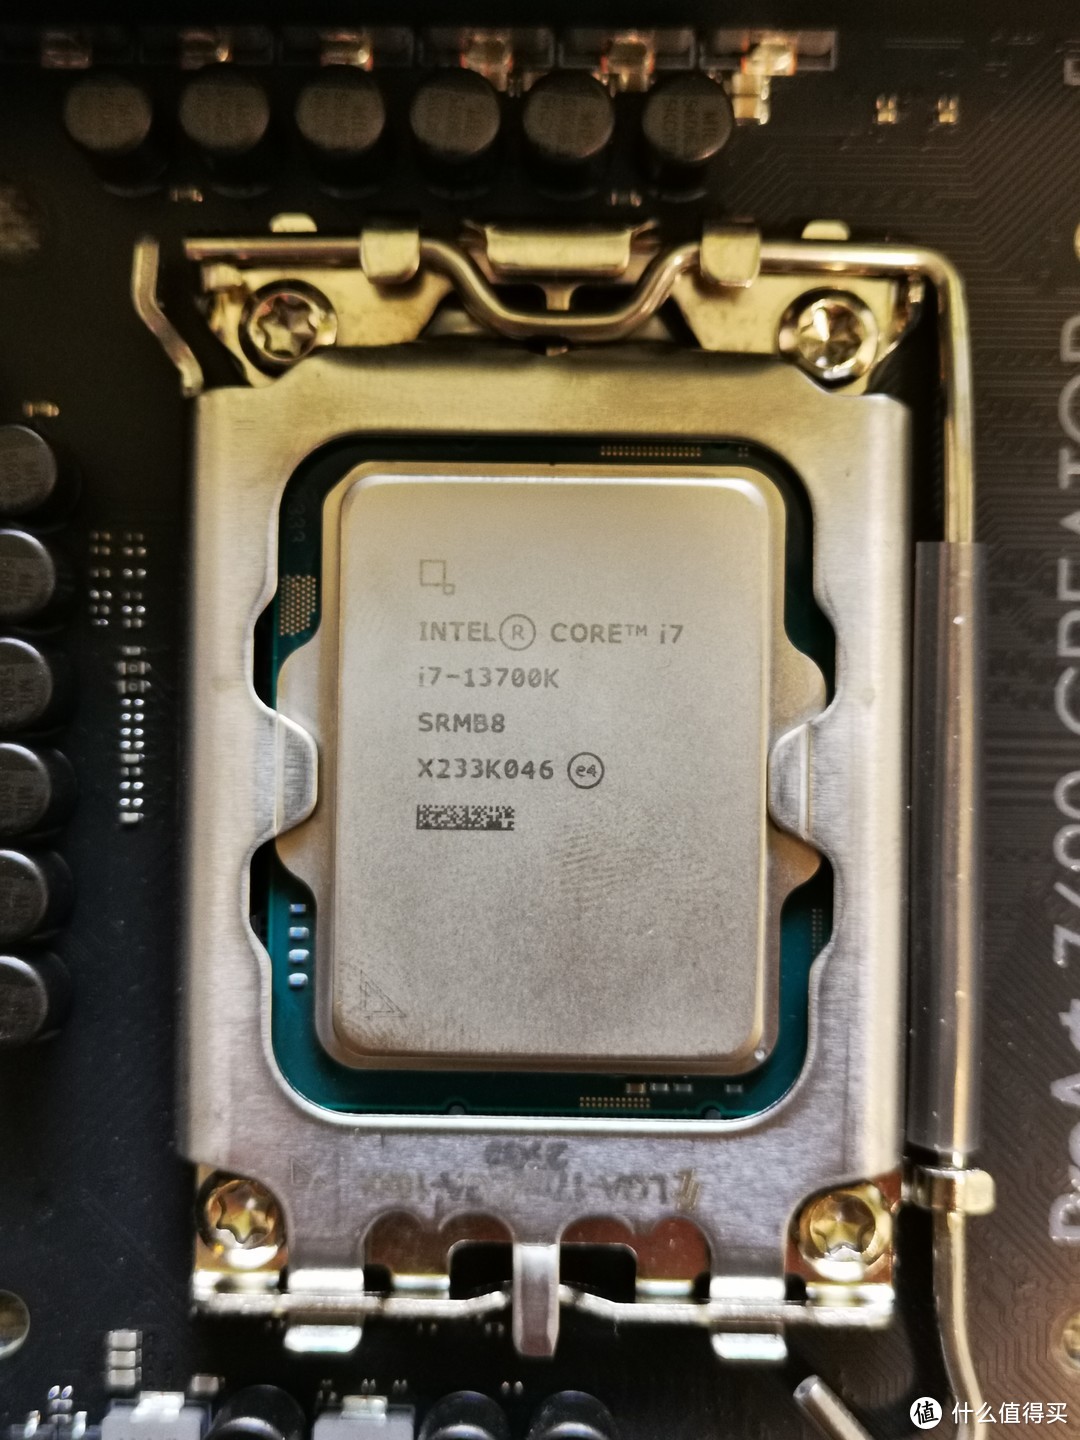 Intel i7 13700k CPU